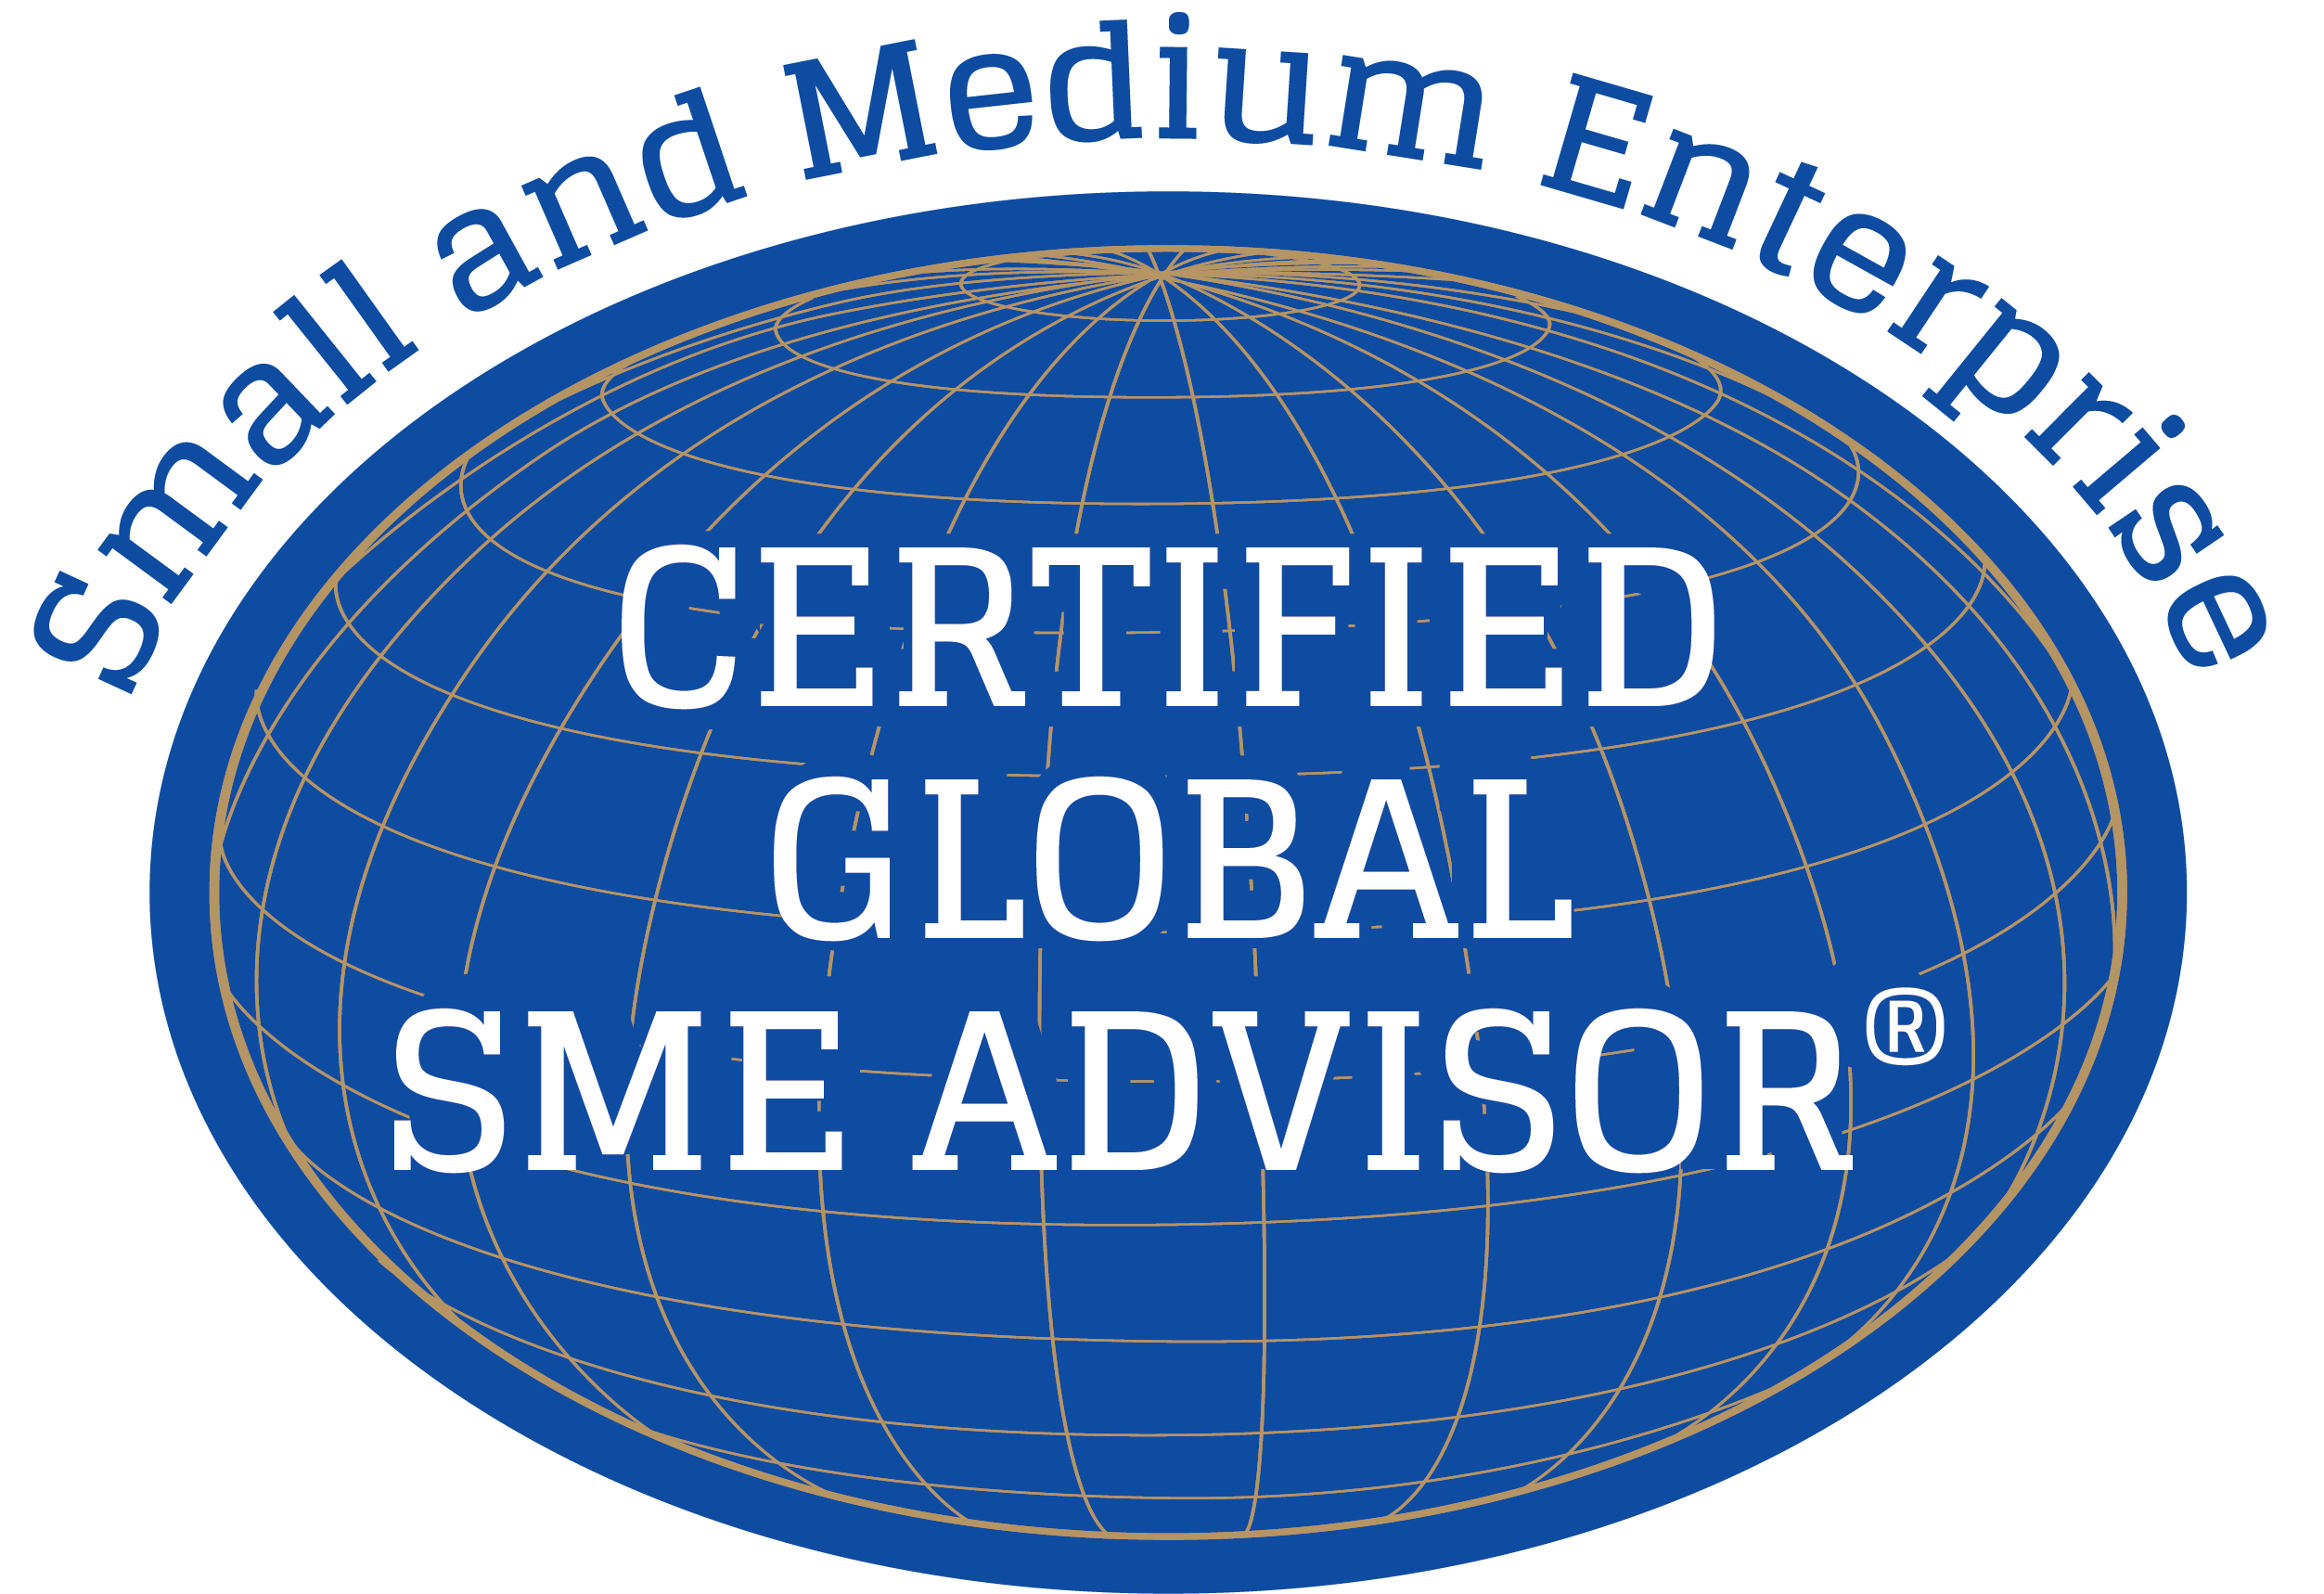 The SME Advisor(R) Monthly Newsletter